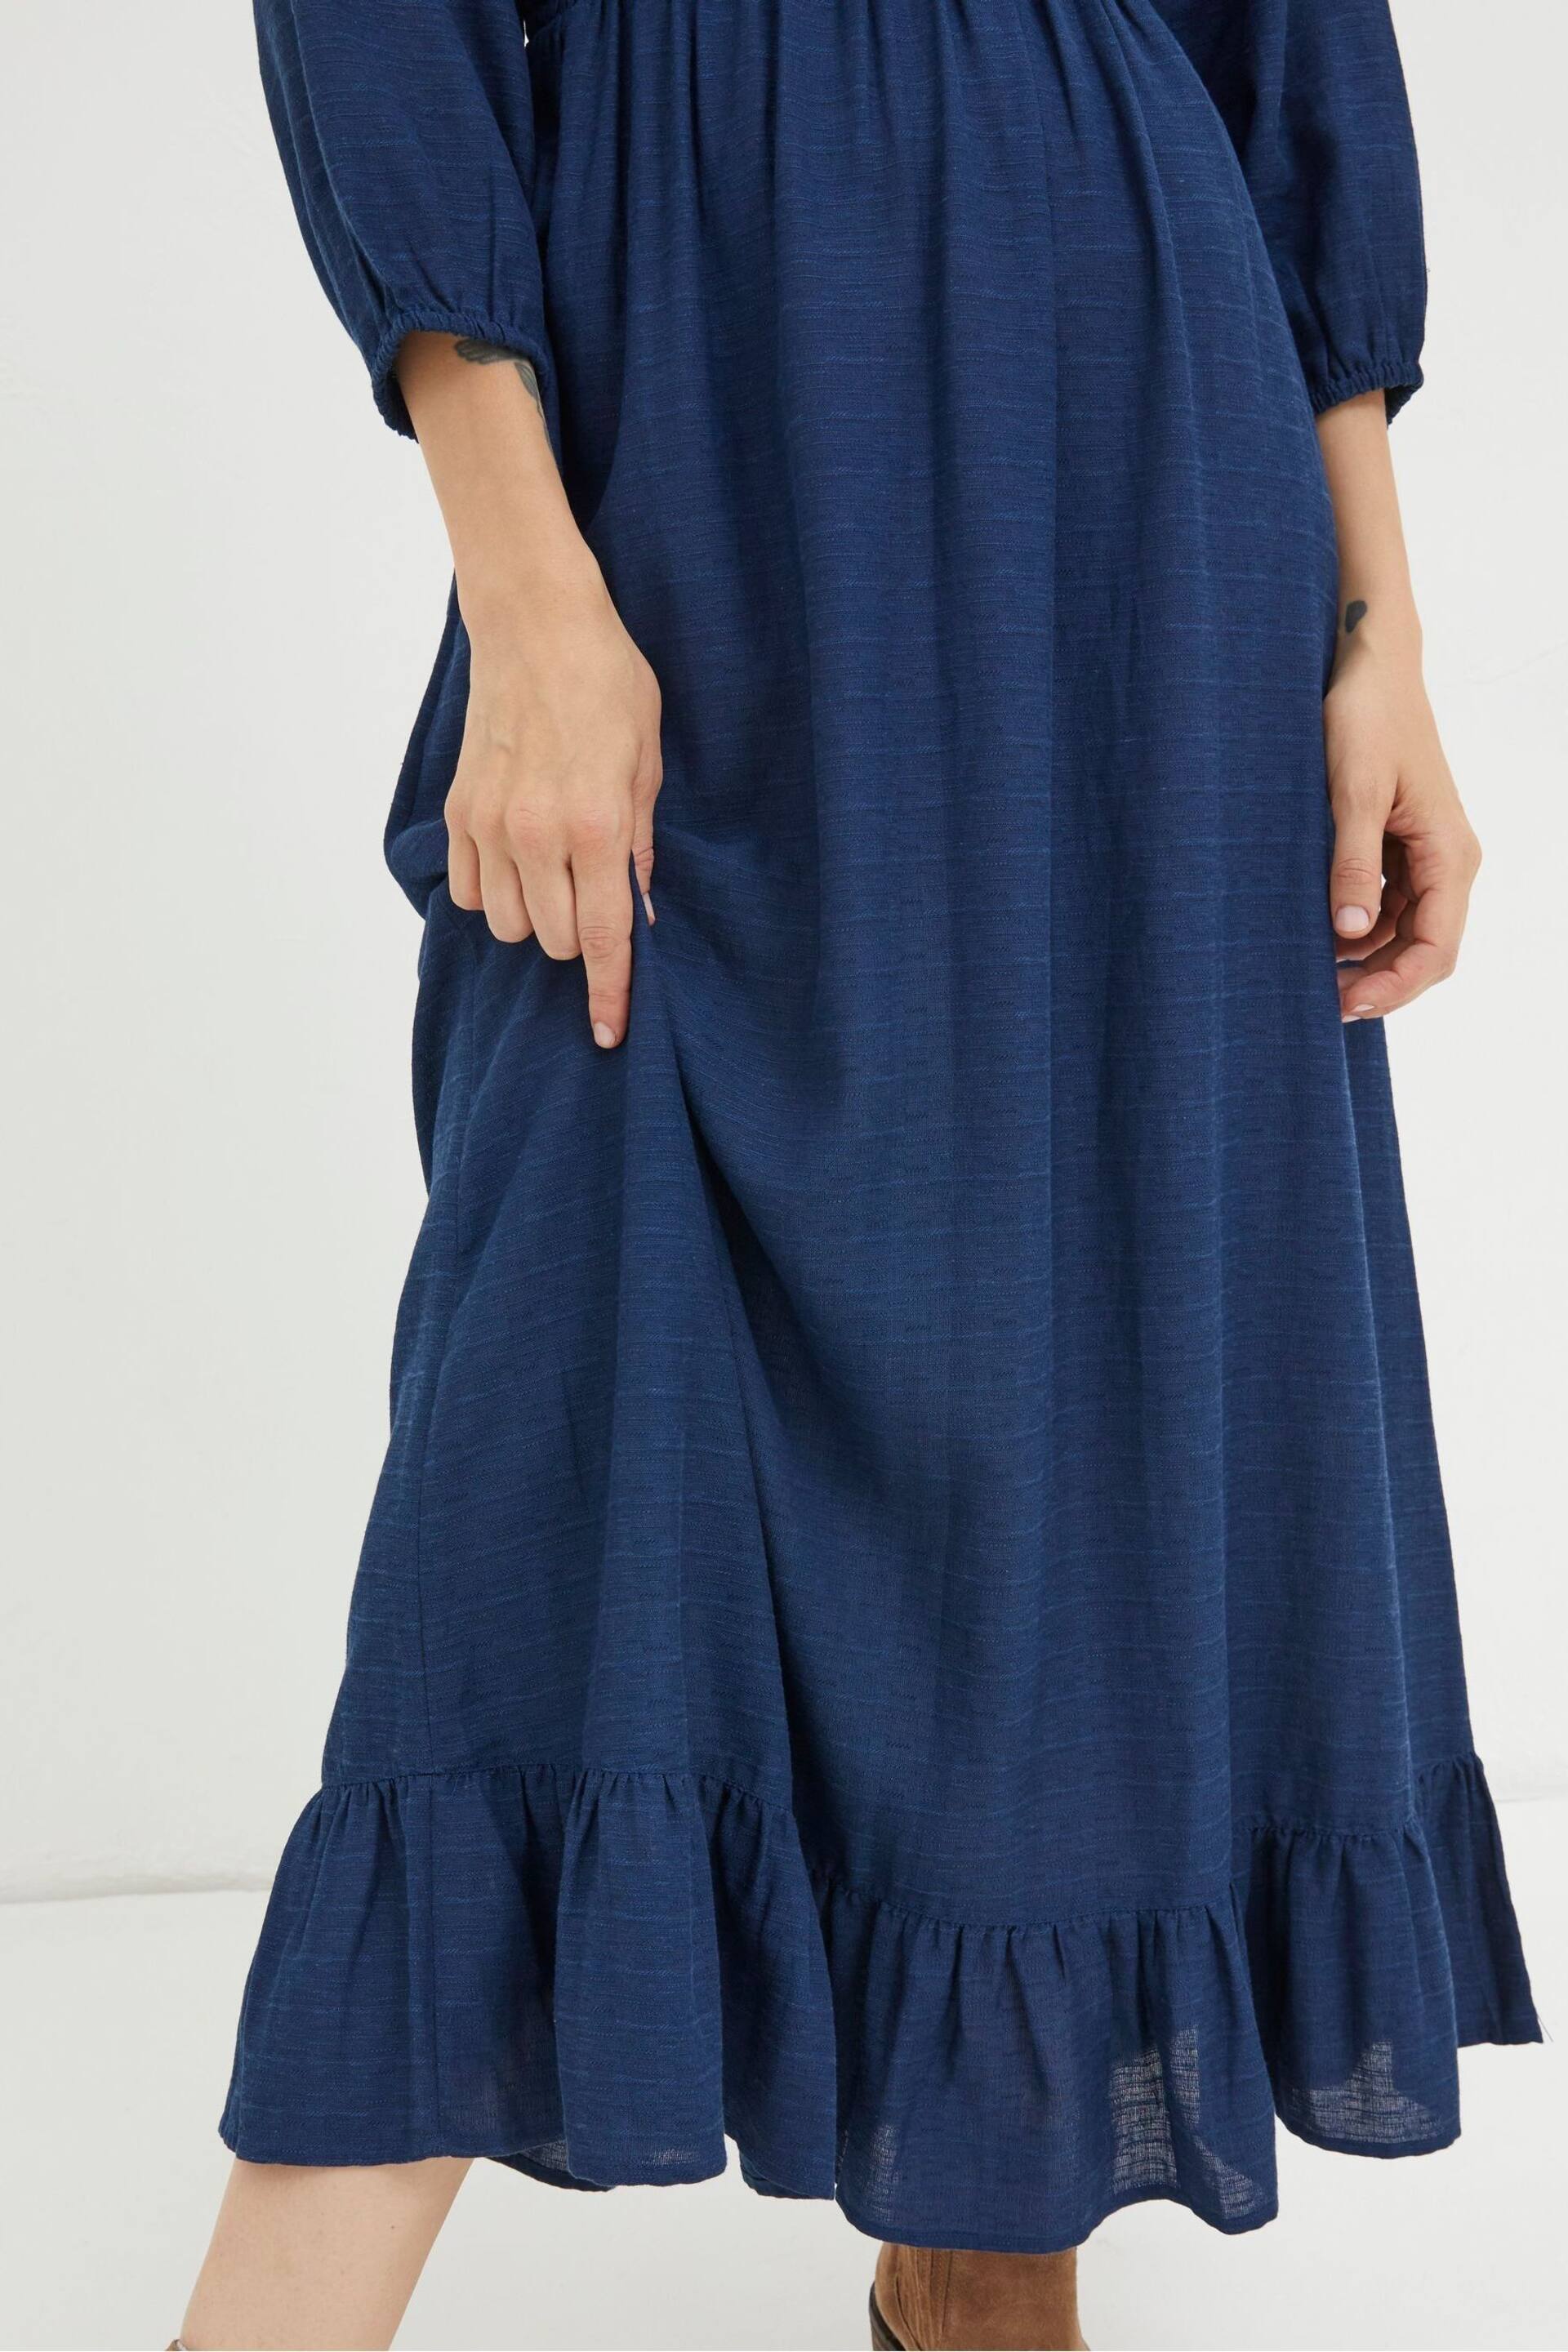 FatFace Blue Adele Midi Dress - Image 4 of 5